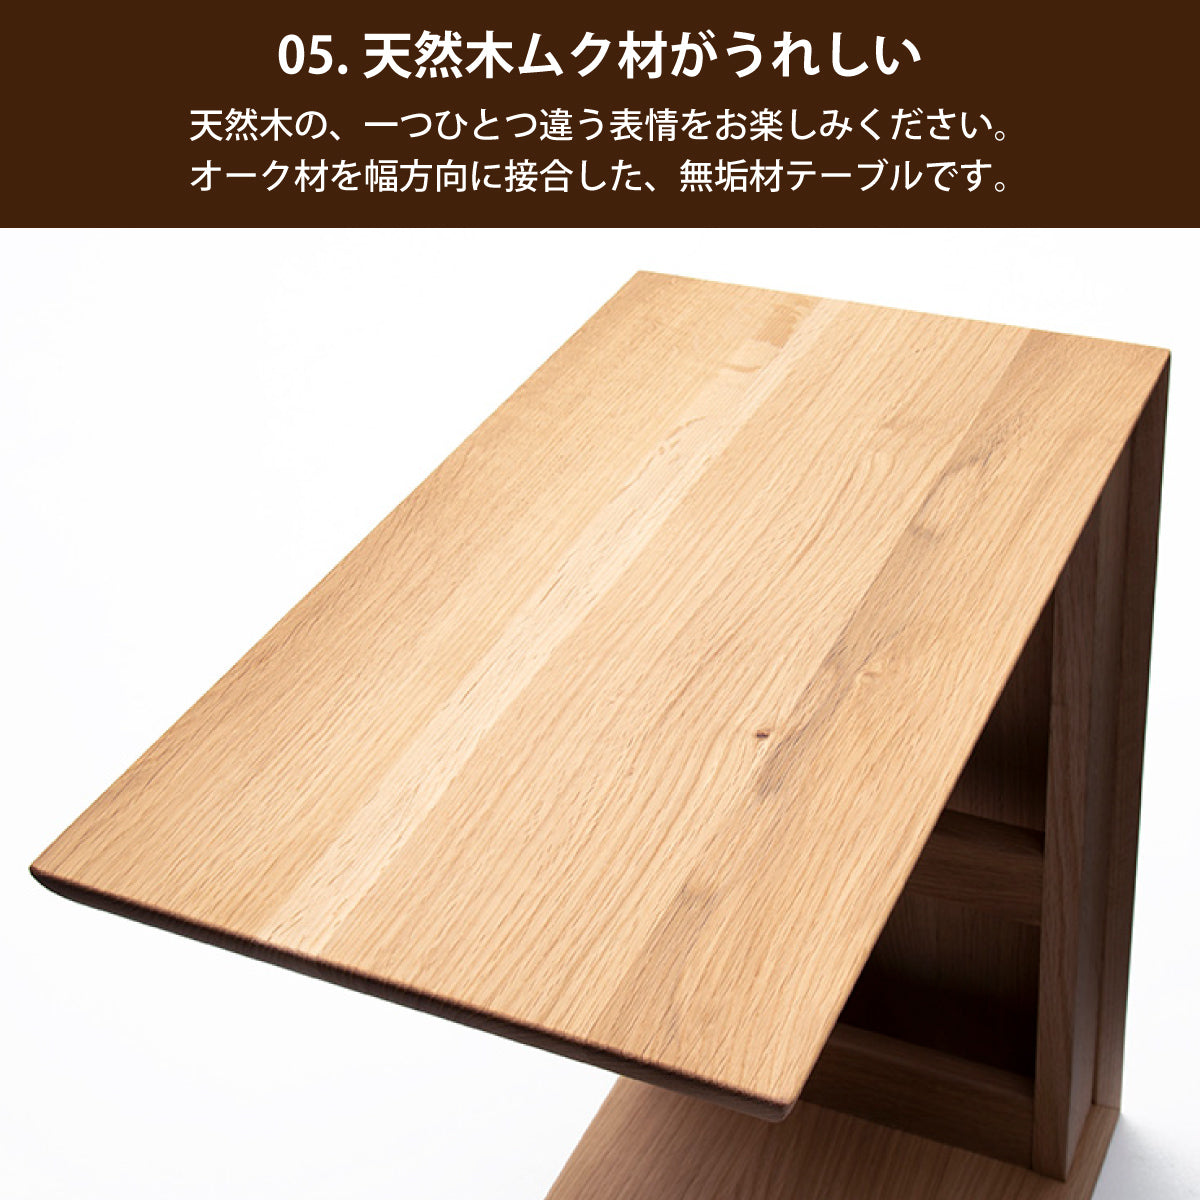 モカブラウン色【美品】 karimoku サイドテーブル TU1752MK